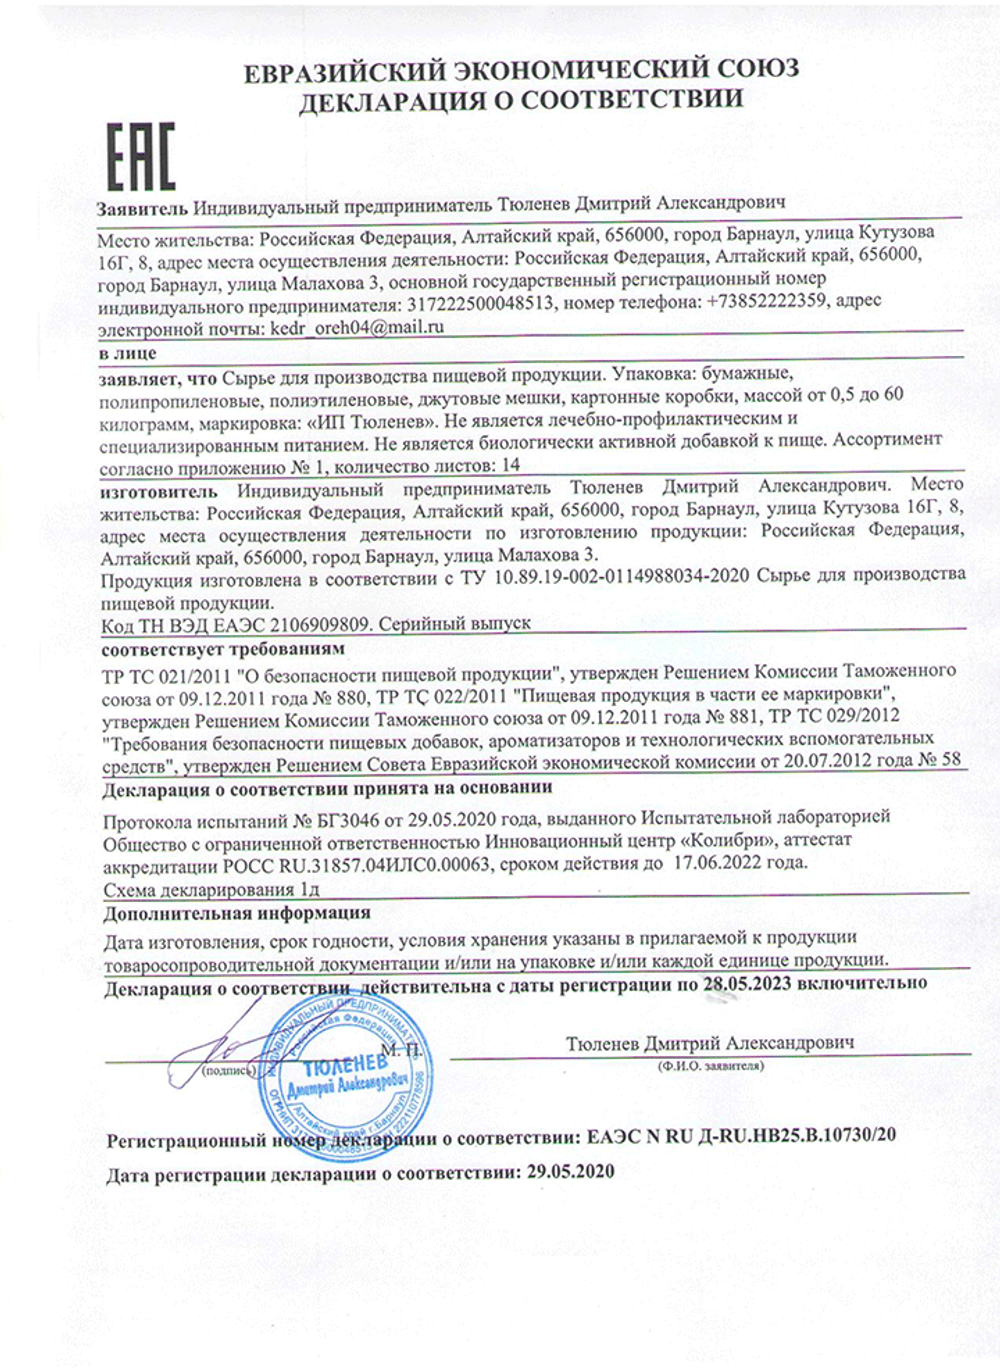 Изображение сертификата соответствия корней валерианы лекарственной-adonnis.ru